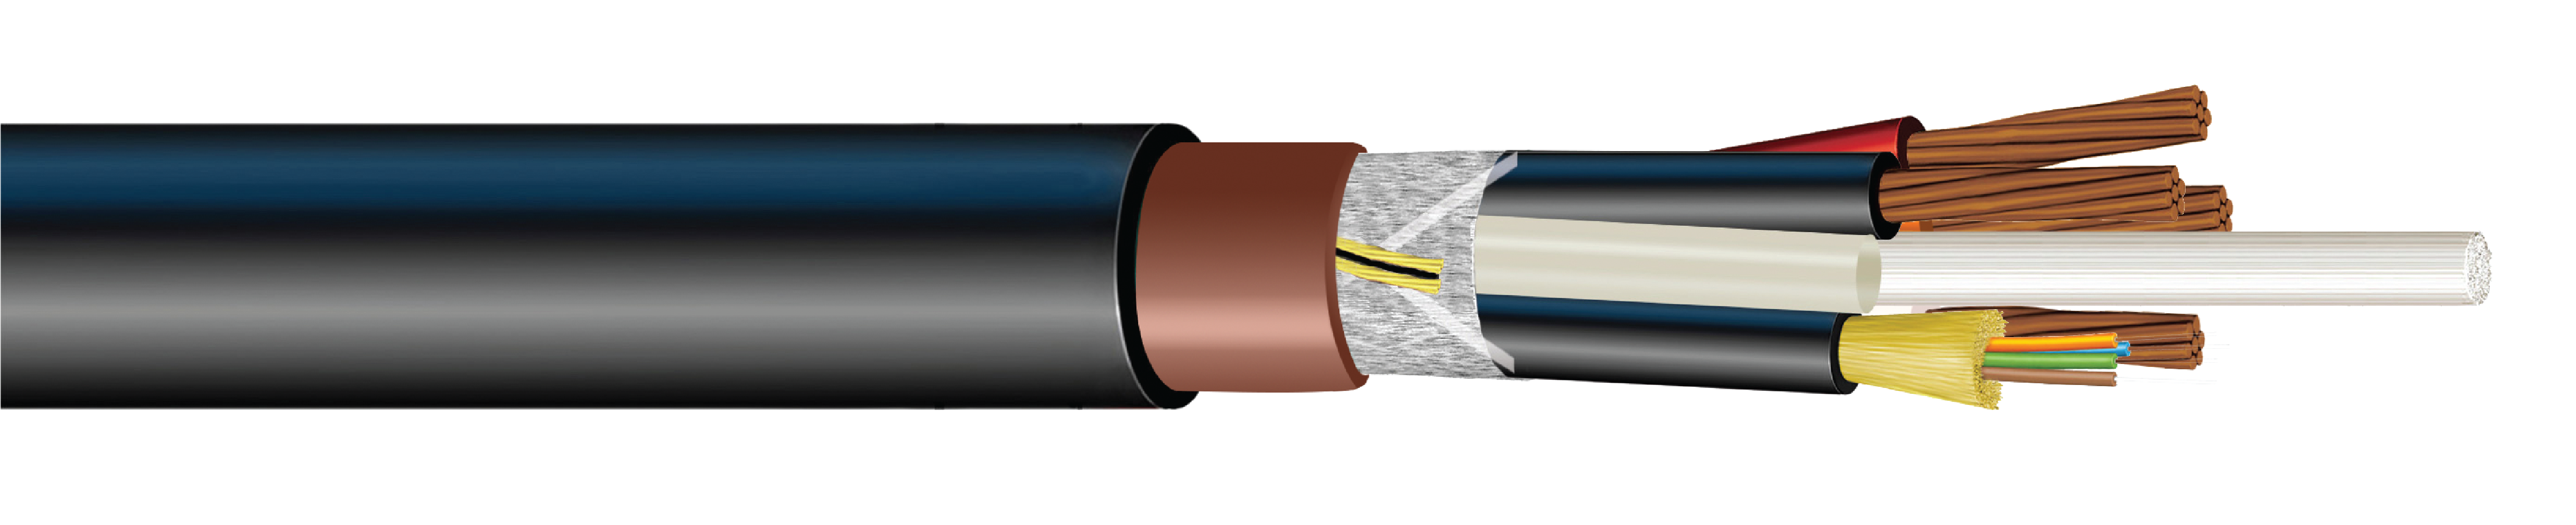 4G Hybrid Fiber-Copper Cable Fiber and Copper FTTA wireless Cable